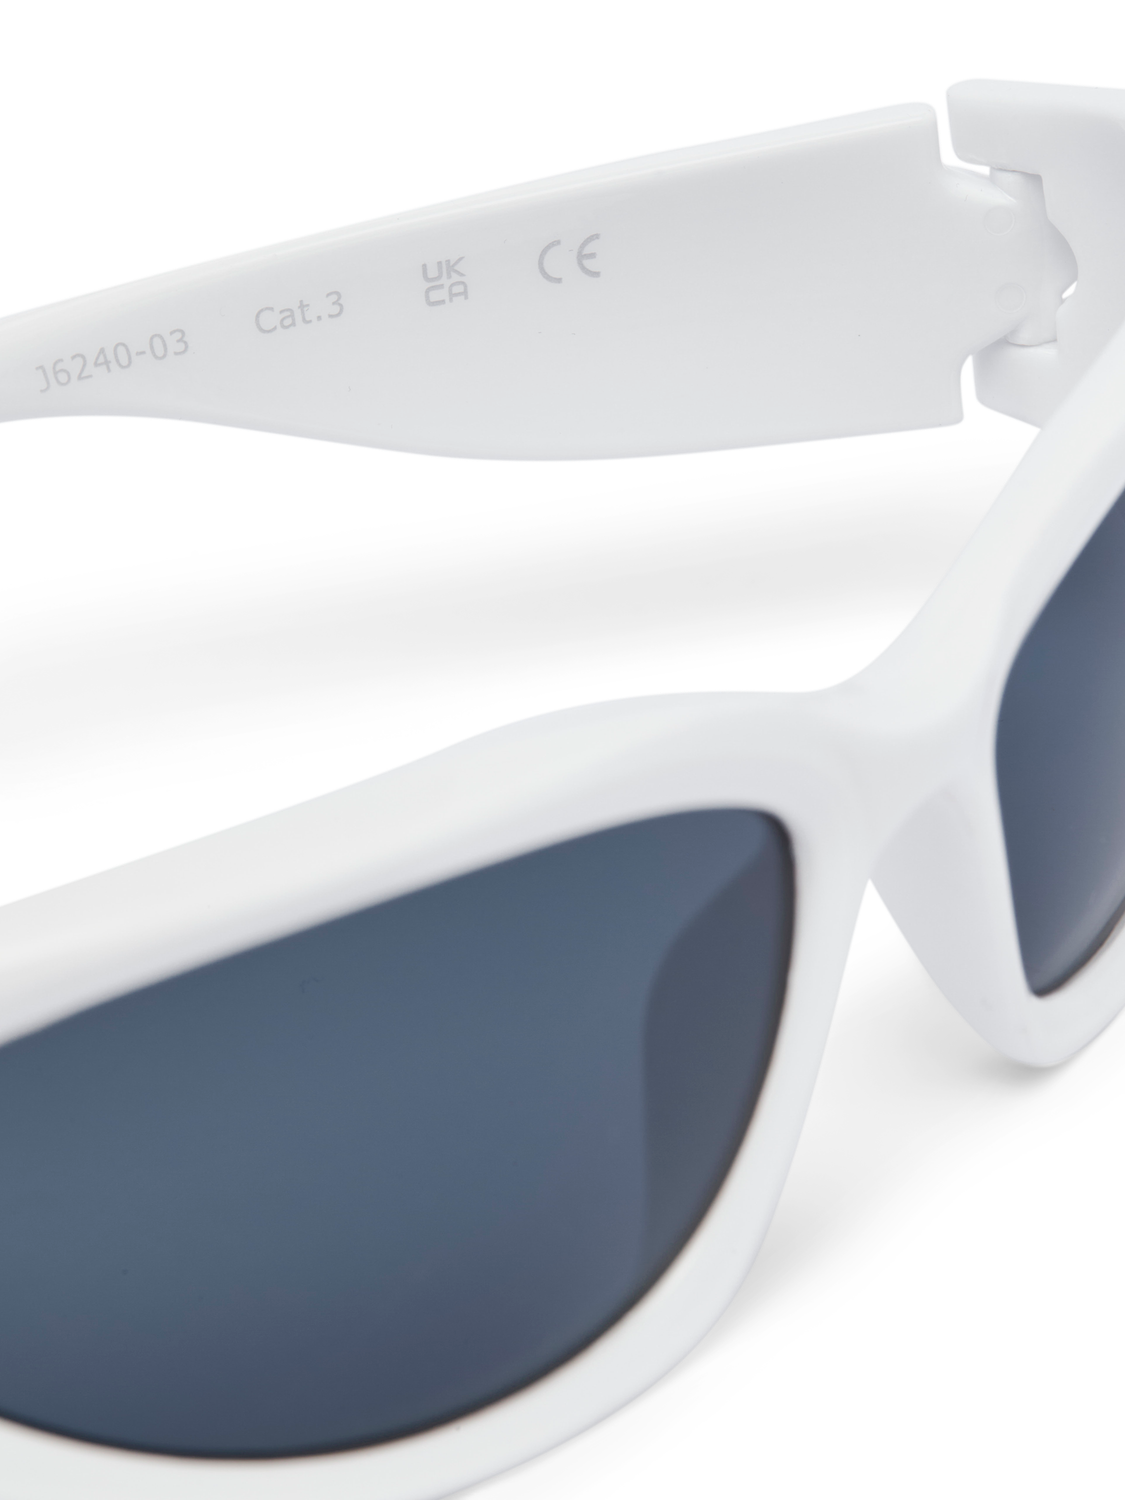 Jack & Jones Plastik Rektangulære solbriller -White - 12251497